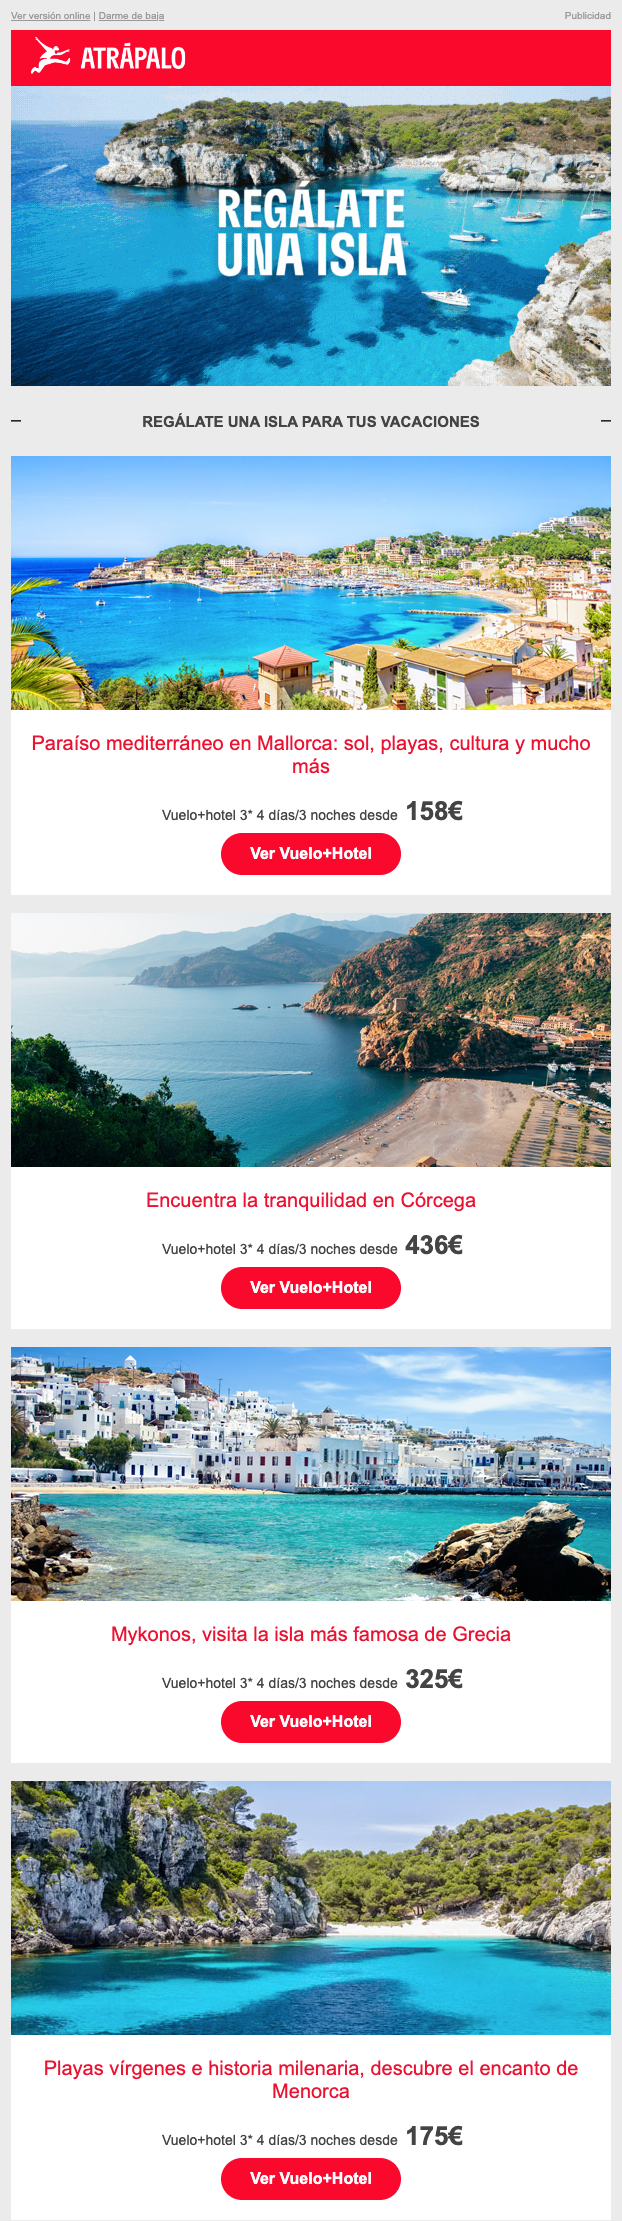 Un correo electrónico con un catálogo de destinos veraniegos de Atrápalo.